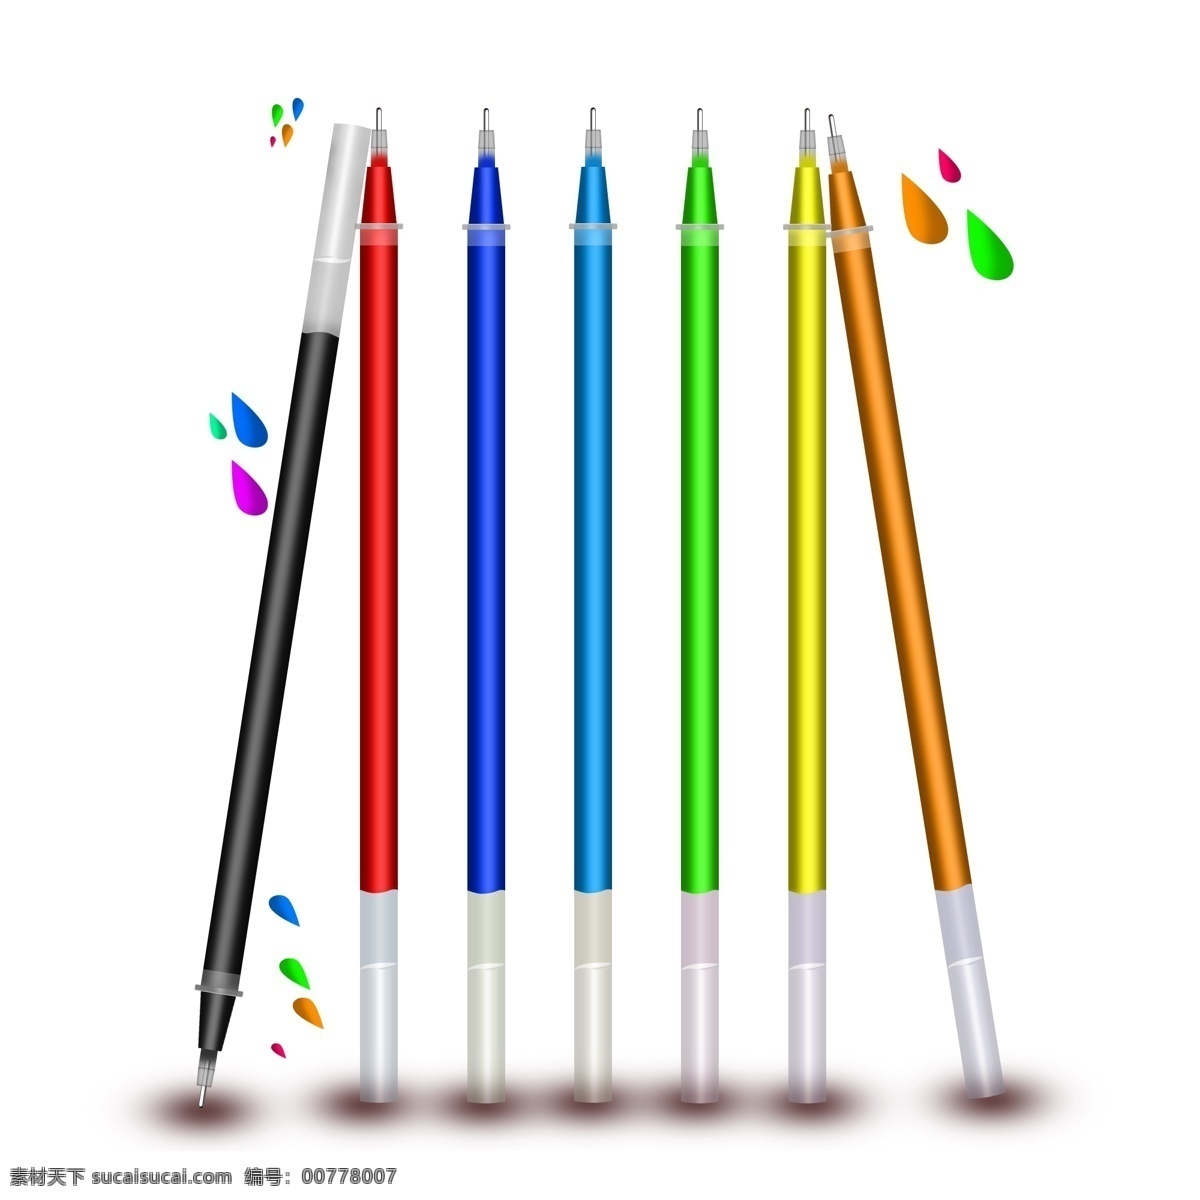 学习 元素 水笔 彩色 笔芯 学习素材 学习元素 水笔笔芯